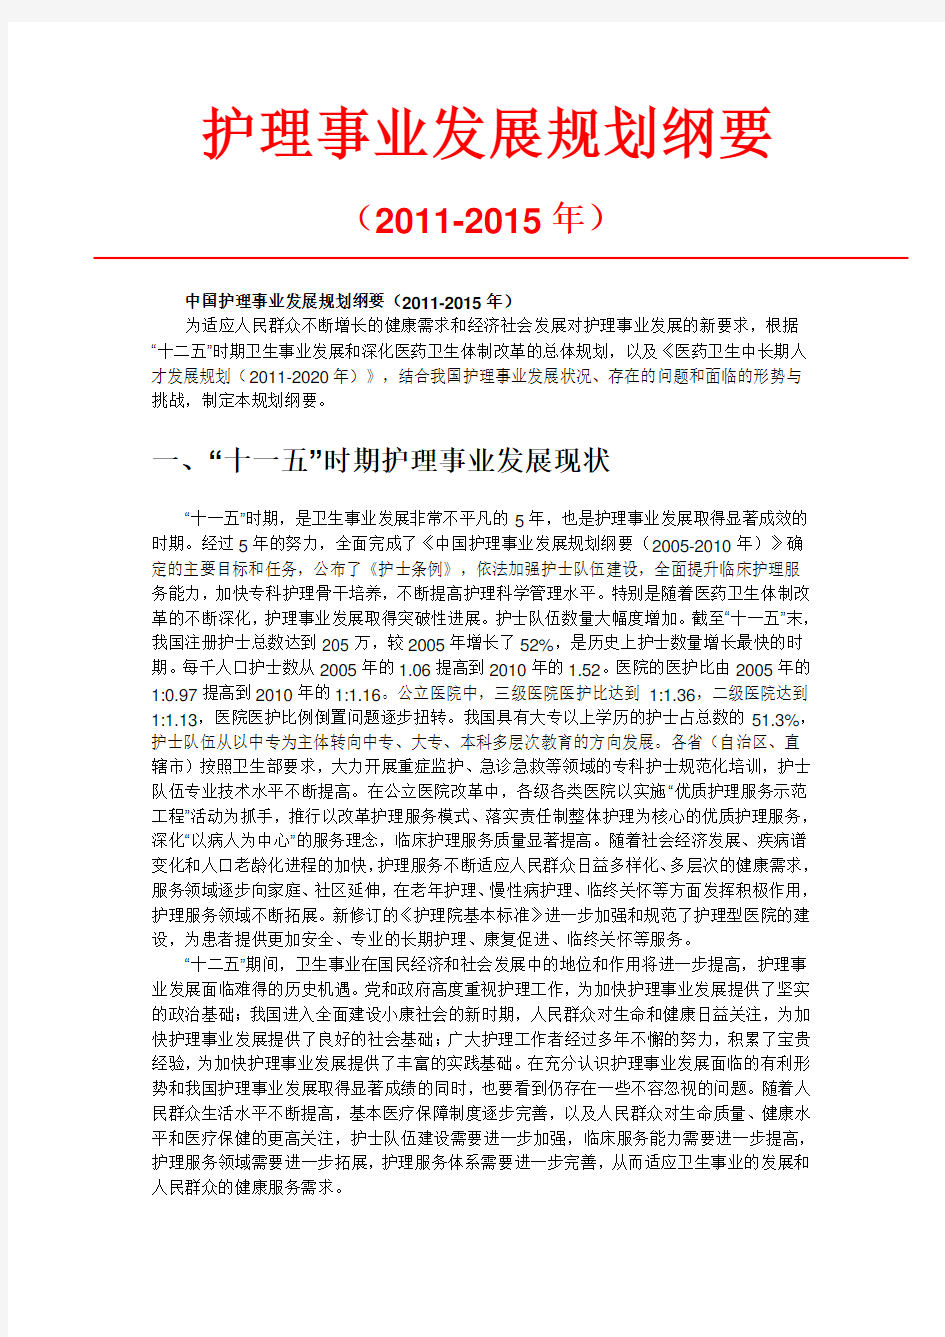 中国护理事业发展规划纲要(2011-2015年)